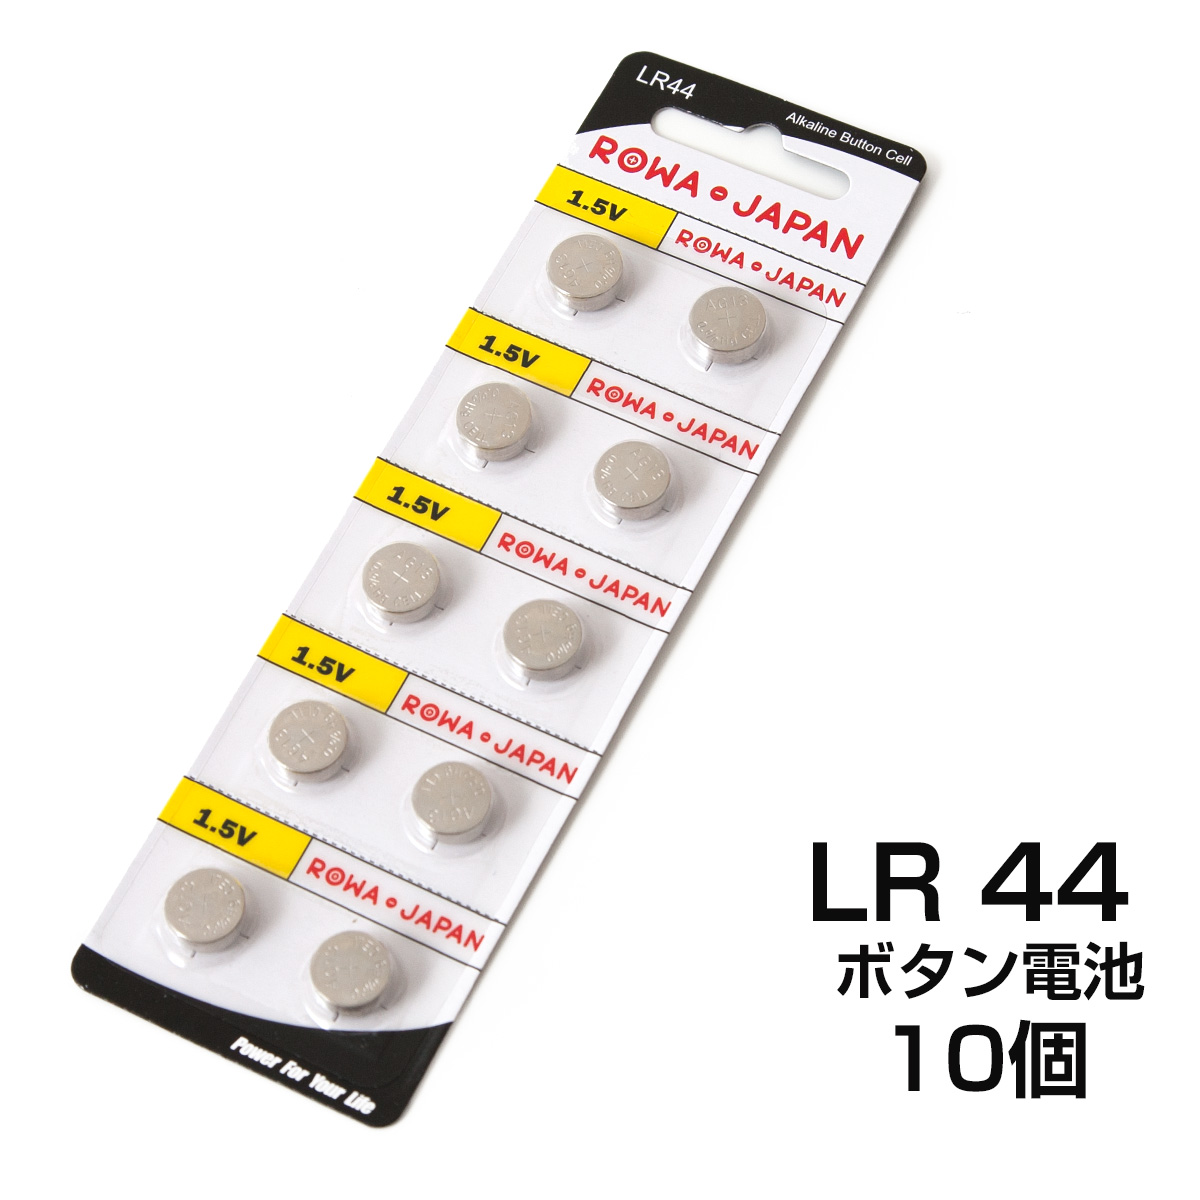 アルカリボタン電池 LR44 10コ入り 【 HAPPYJOINT 公式 通販サイト